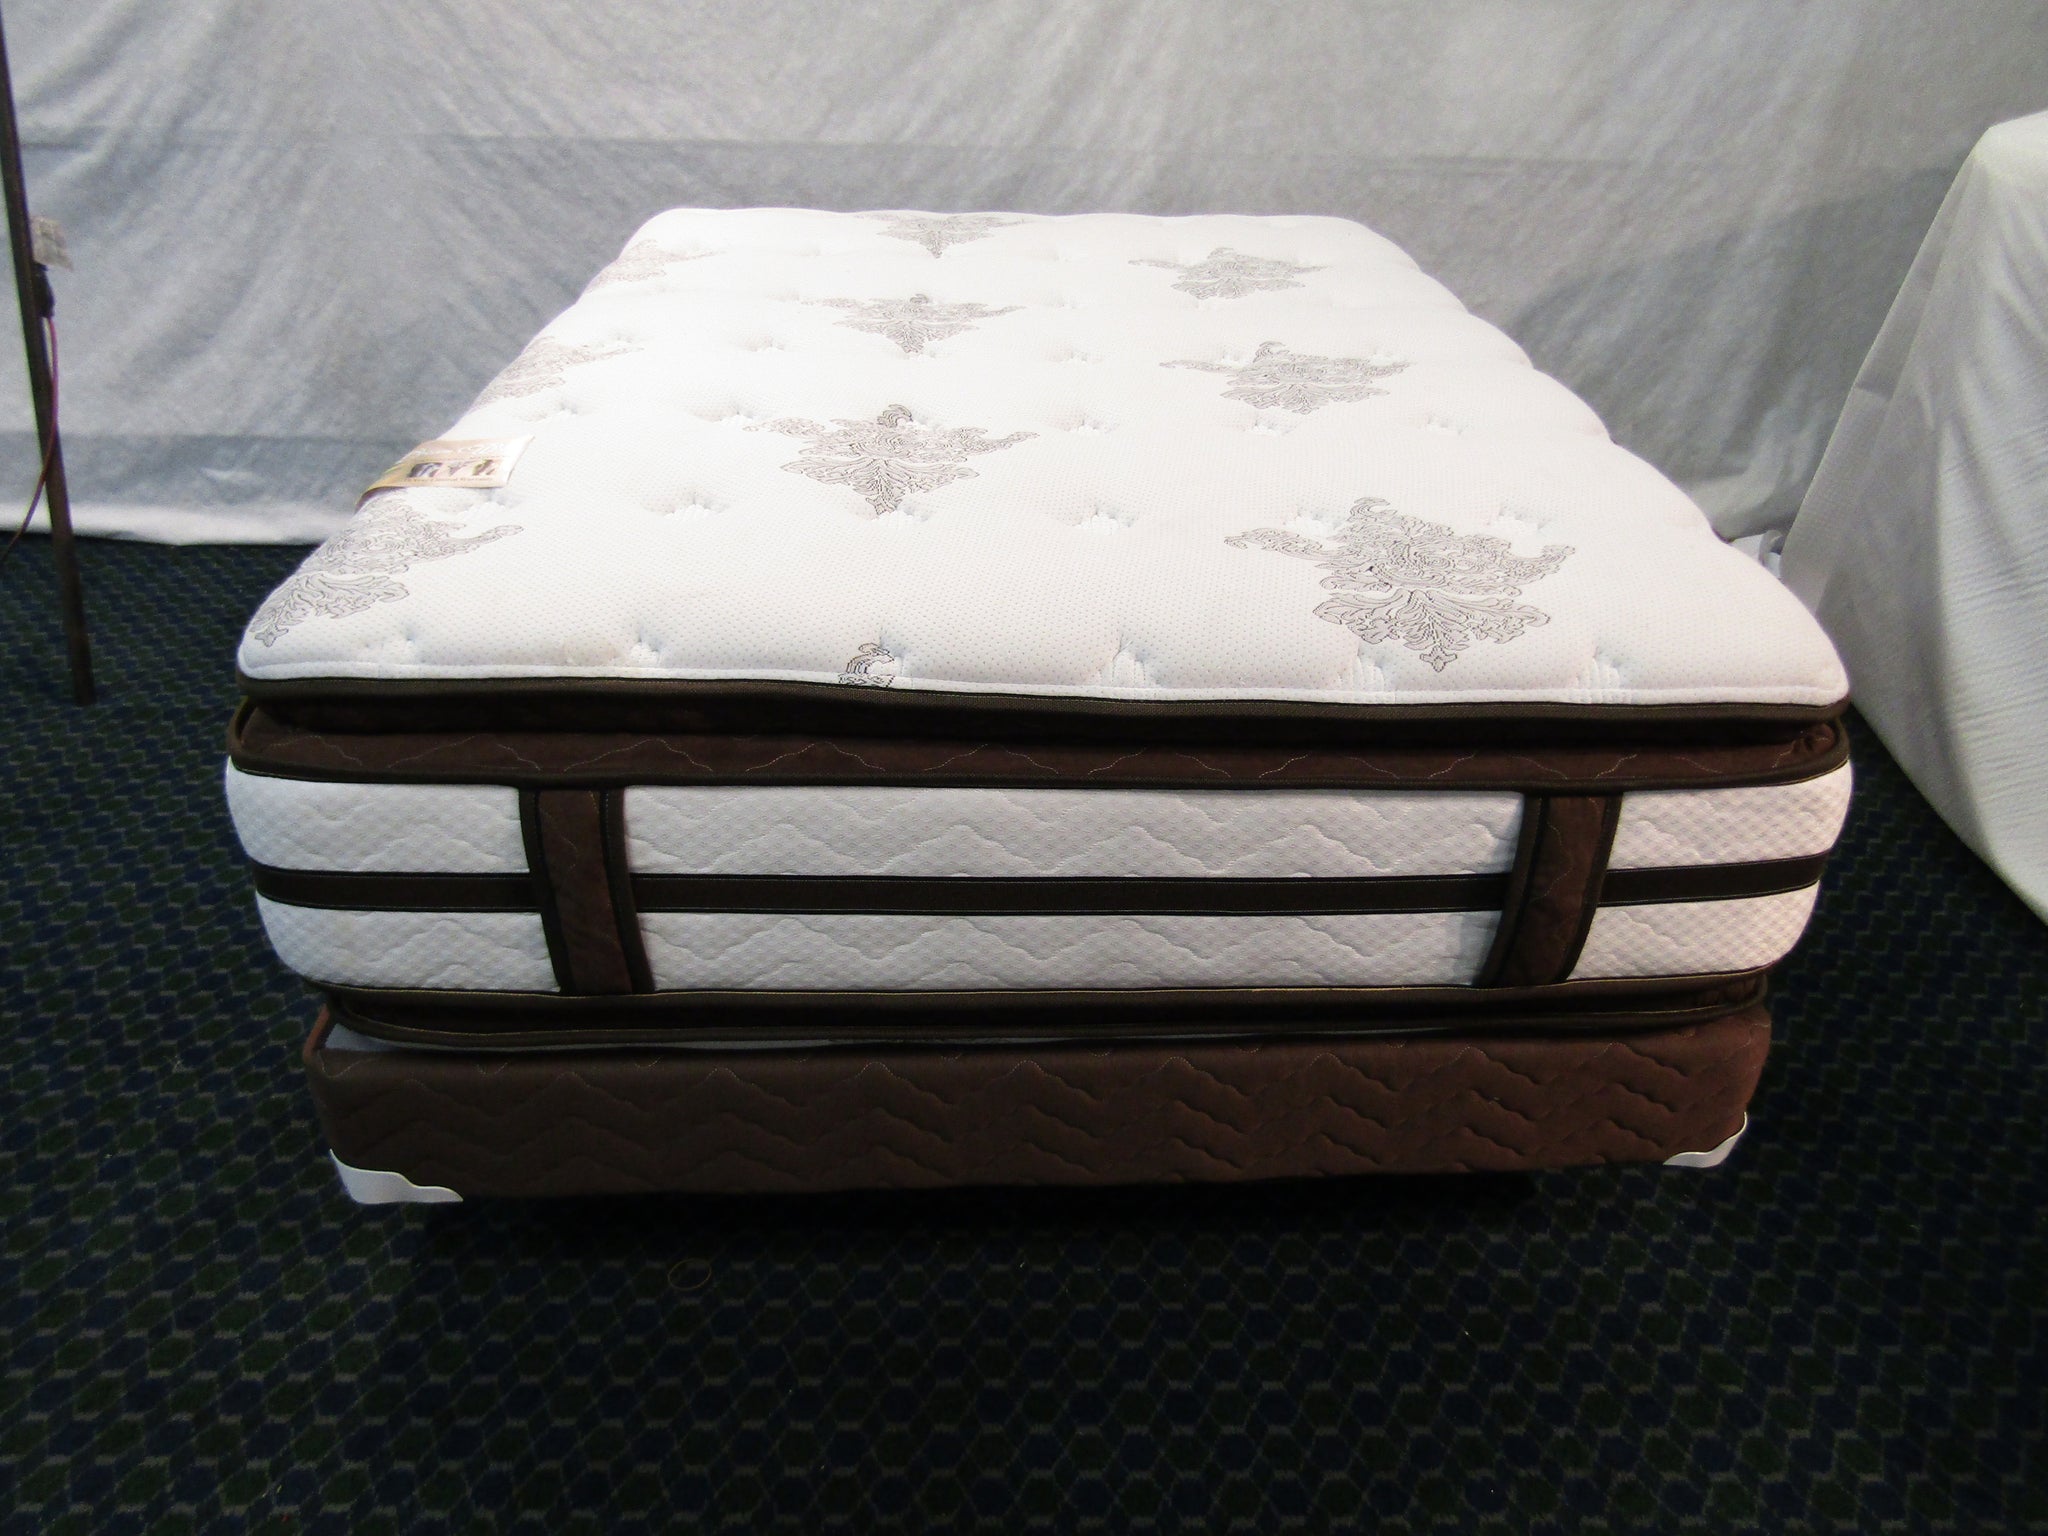 soft mattress in a box uk